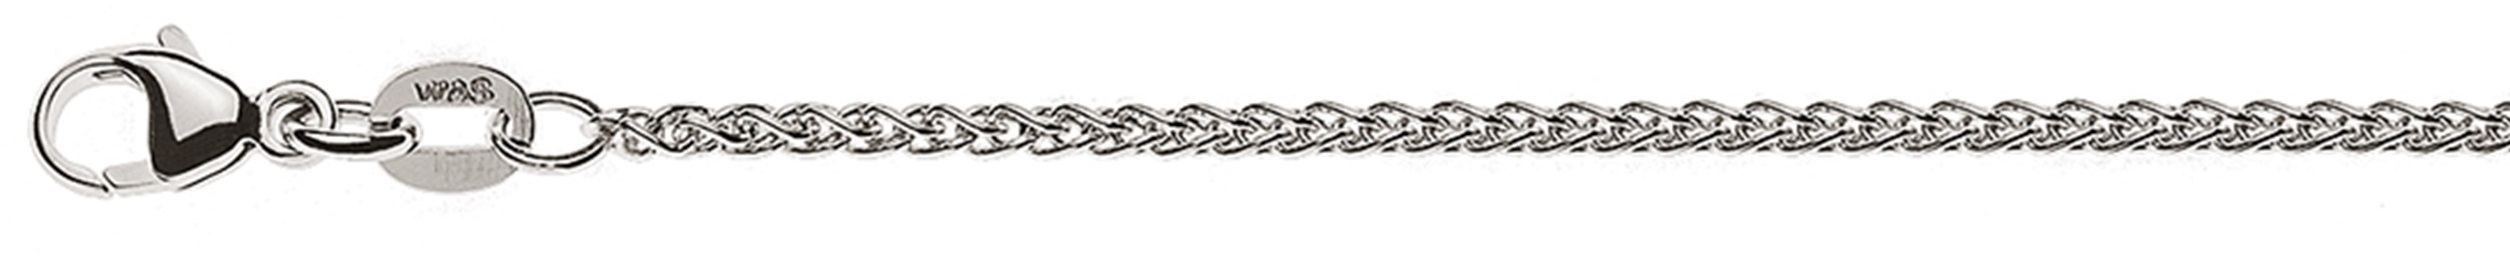 AURONOS Élégance Necklace white gold 14K cable chain 60cm 1.65mm